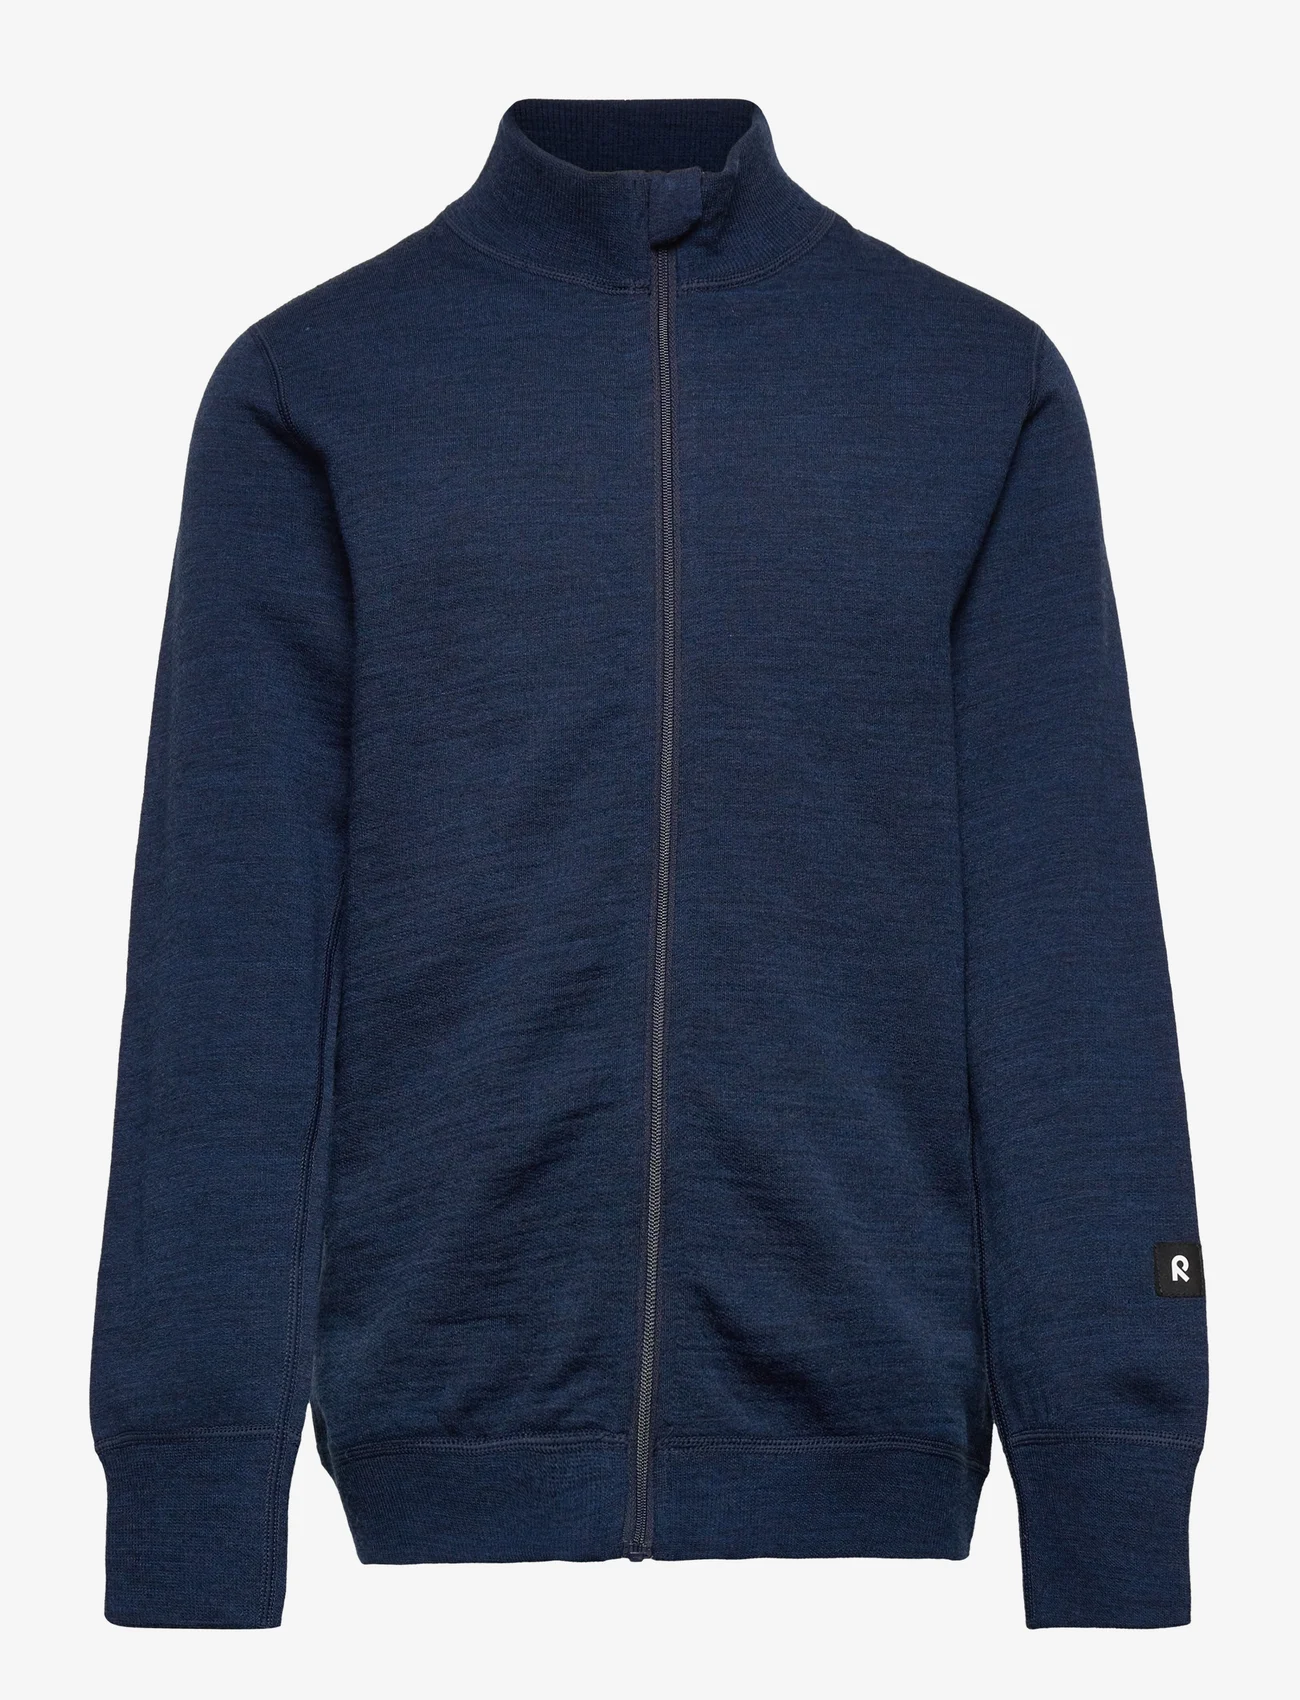 Reima - Sweater, Mahin - sweatshirts & hoodies - navy - 0